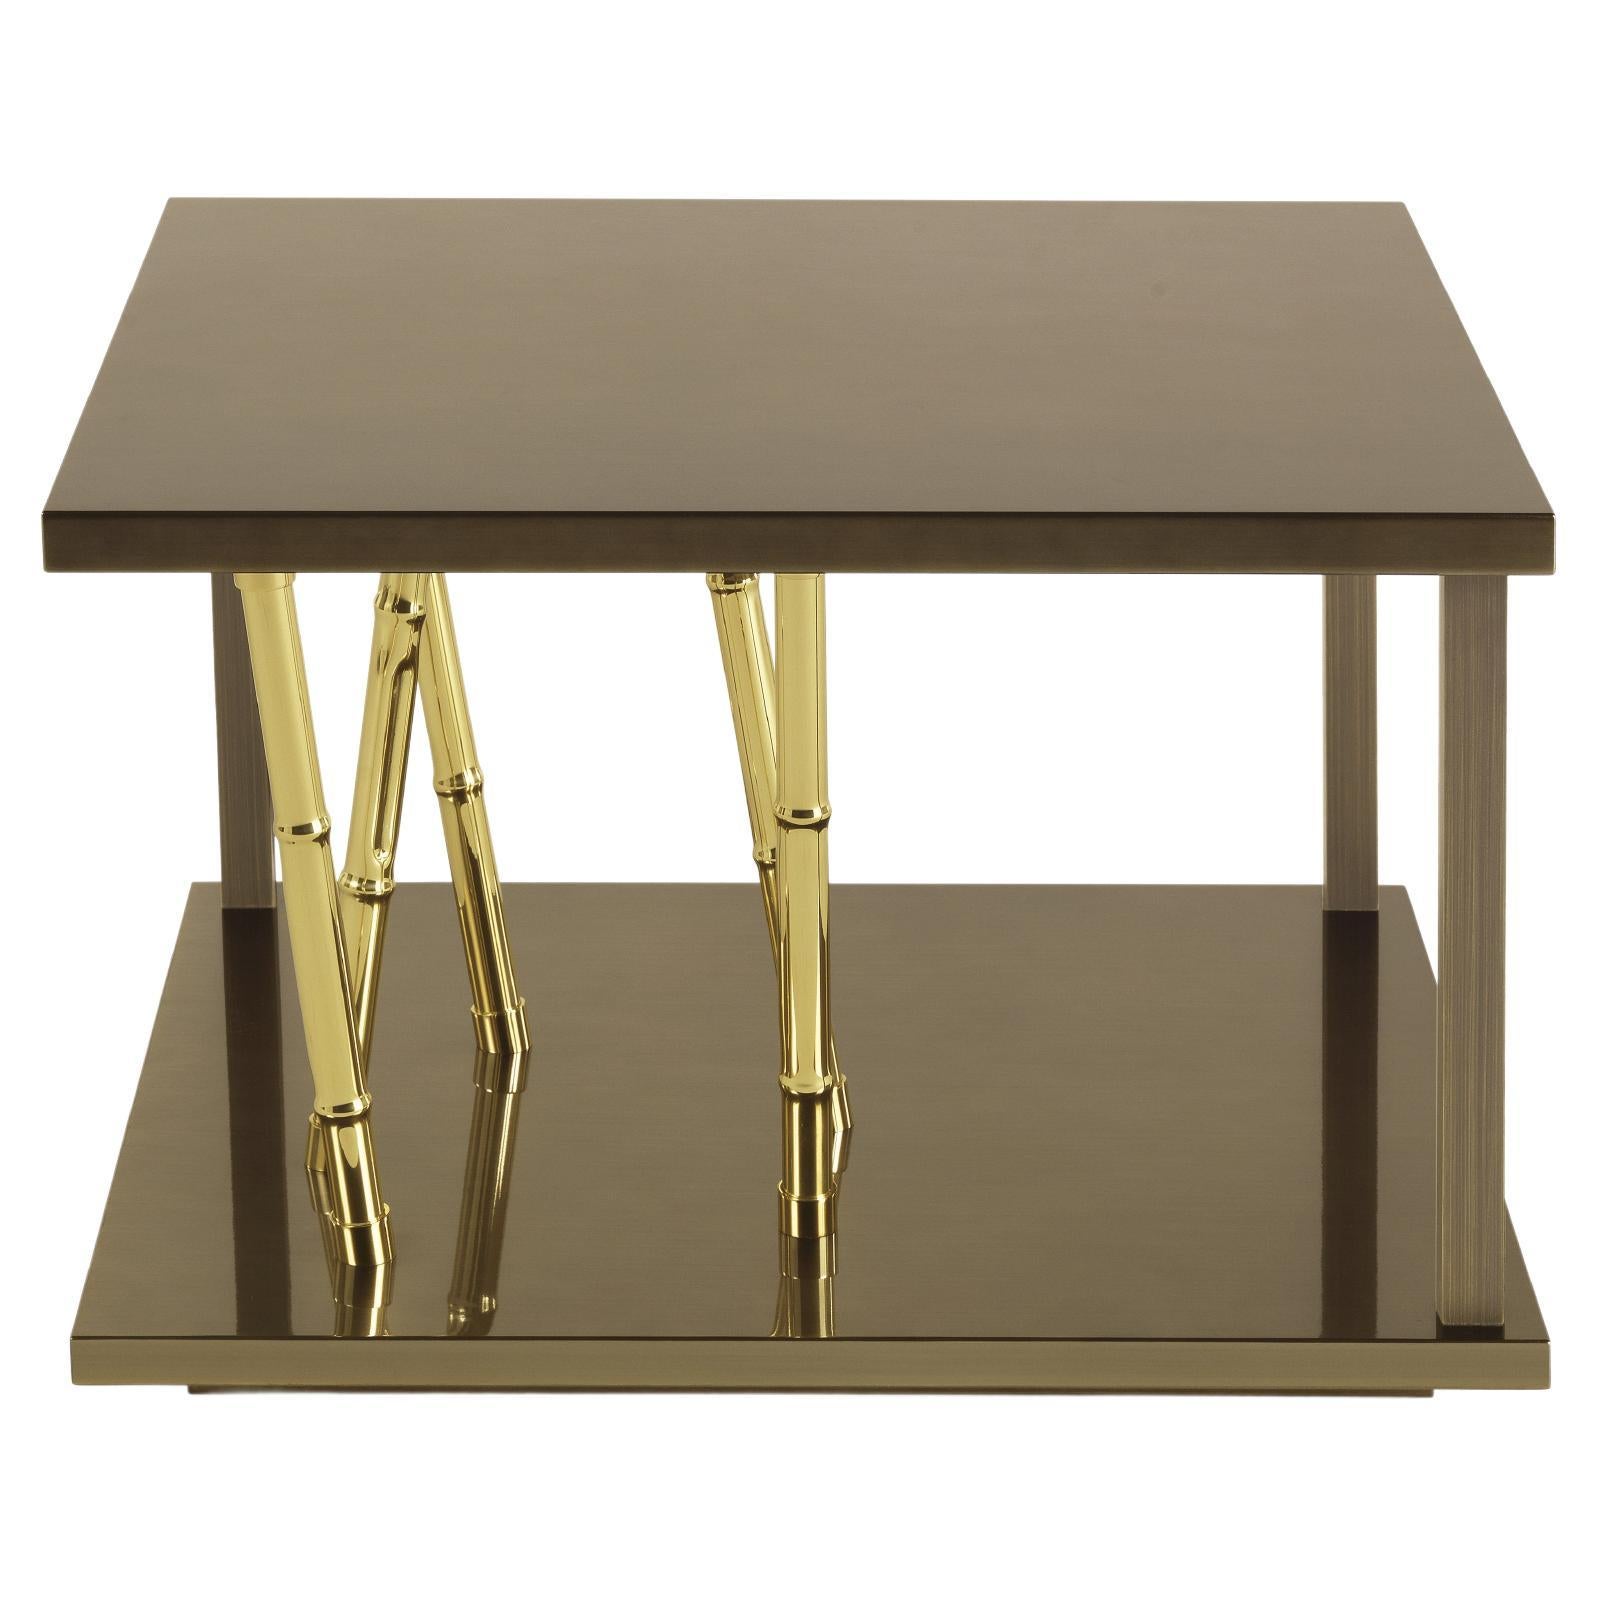 Petite table Taxila du 21e siècle en bois et métal par Etro Home Interiors